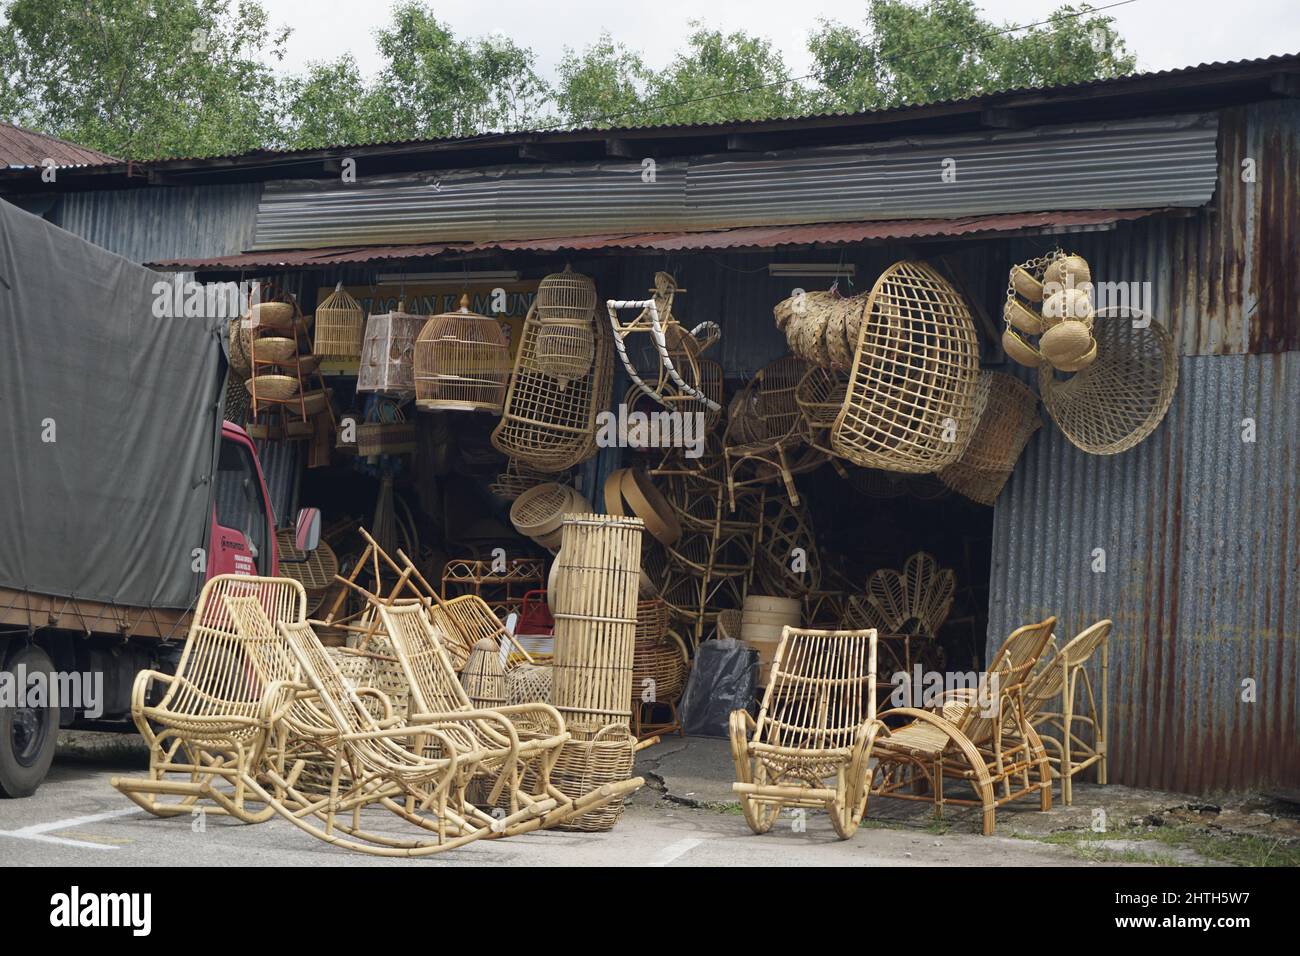 shop selling rattan furniture in Teluk Intan, Malaysia Stock Photo